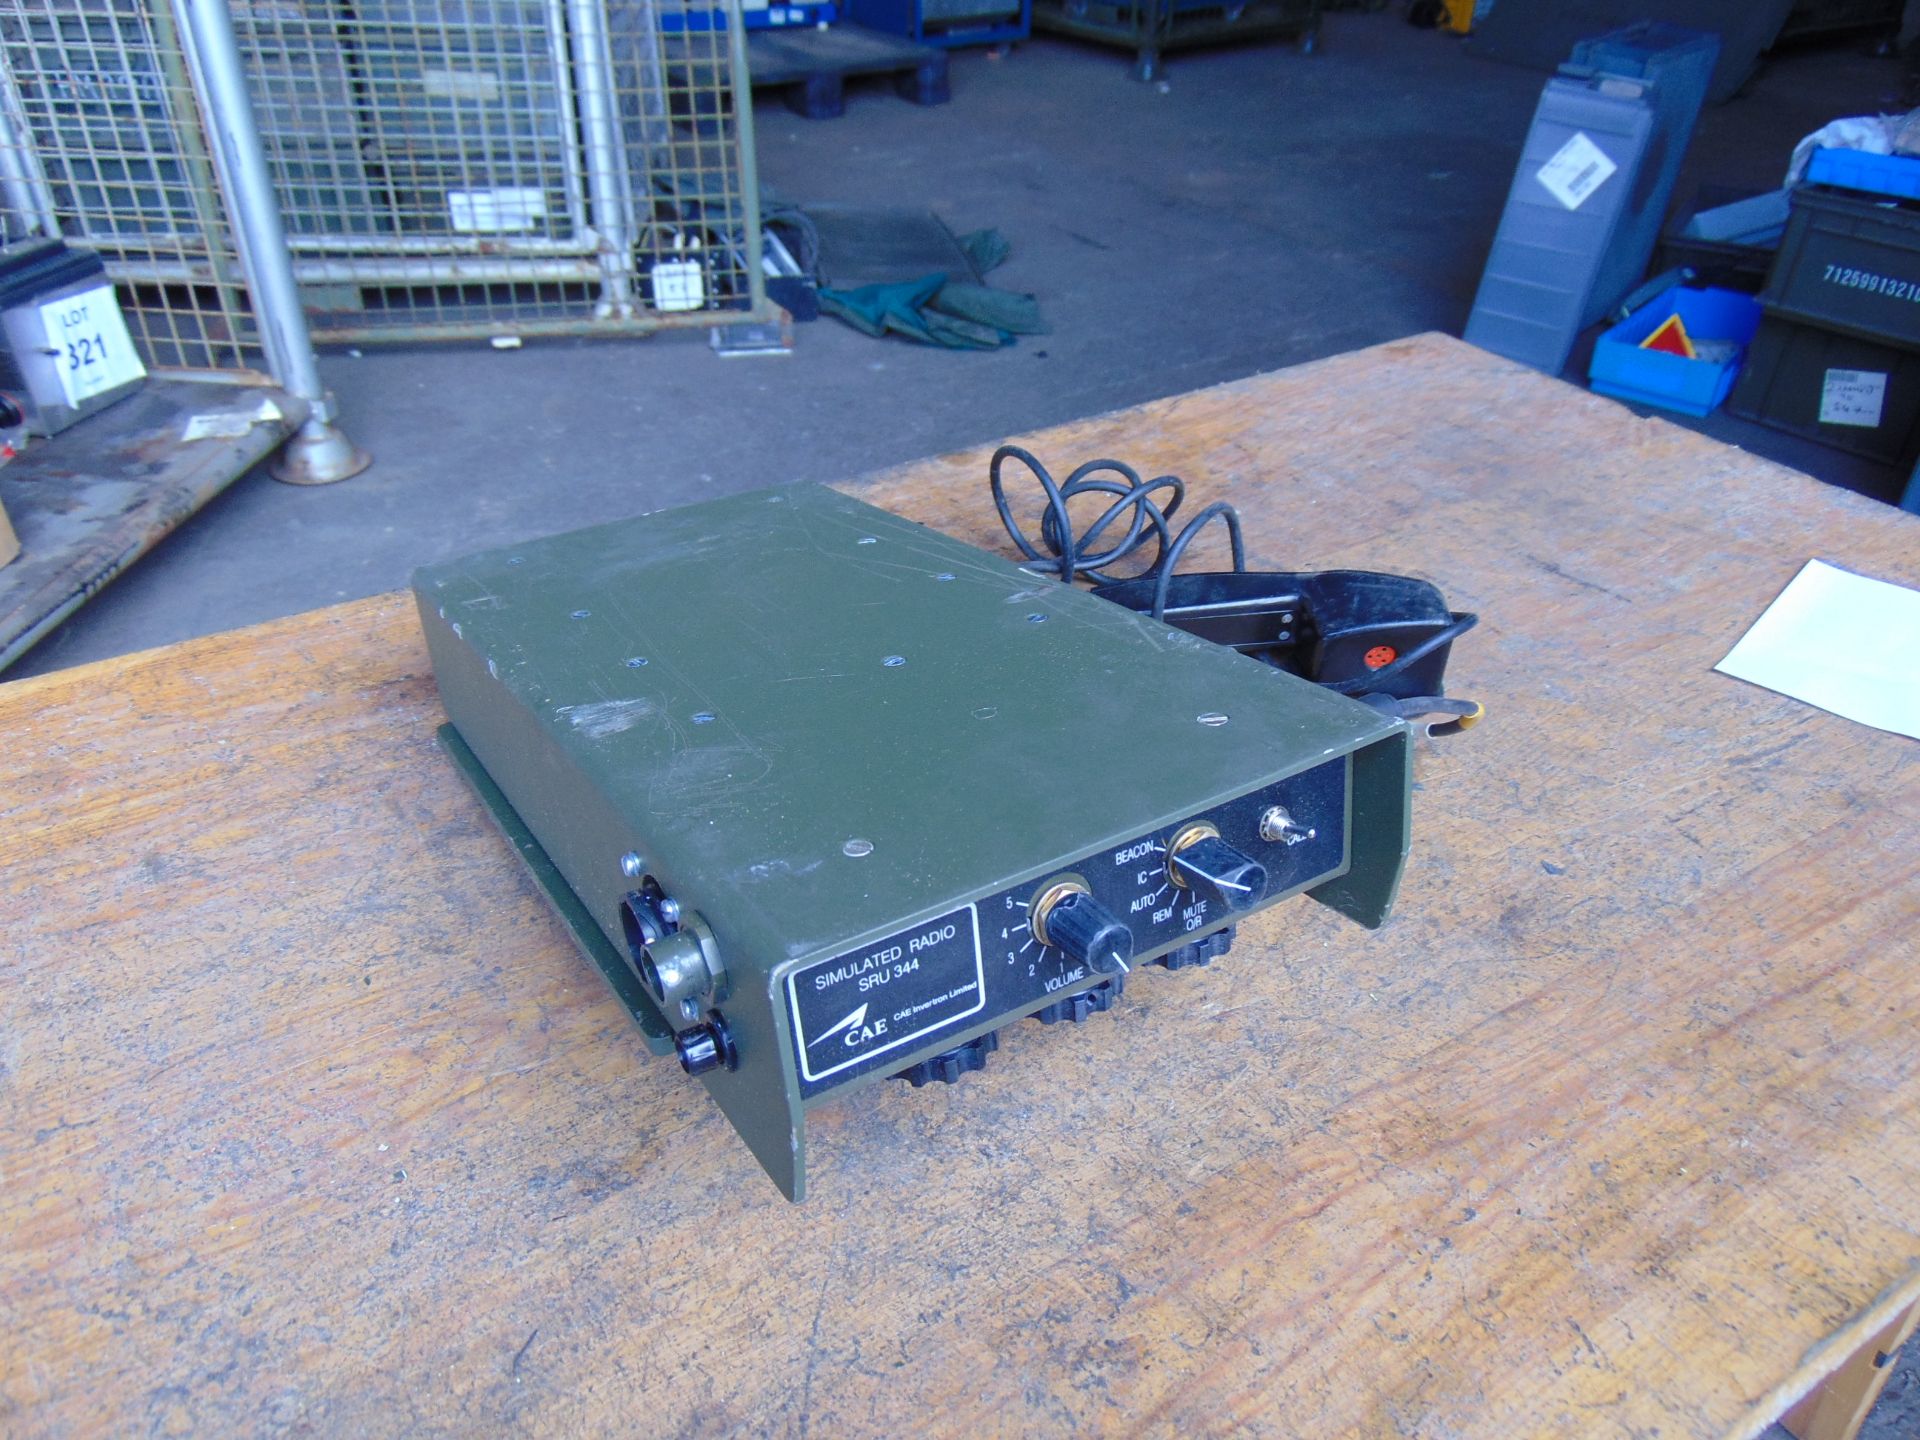 Clansman RT344 Training Transmitter Receiver c/w Handset - Image 4 of 5